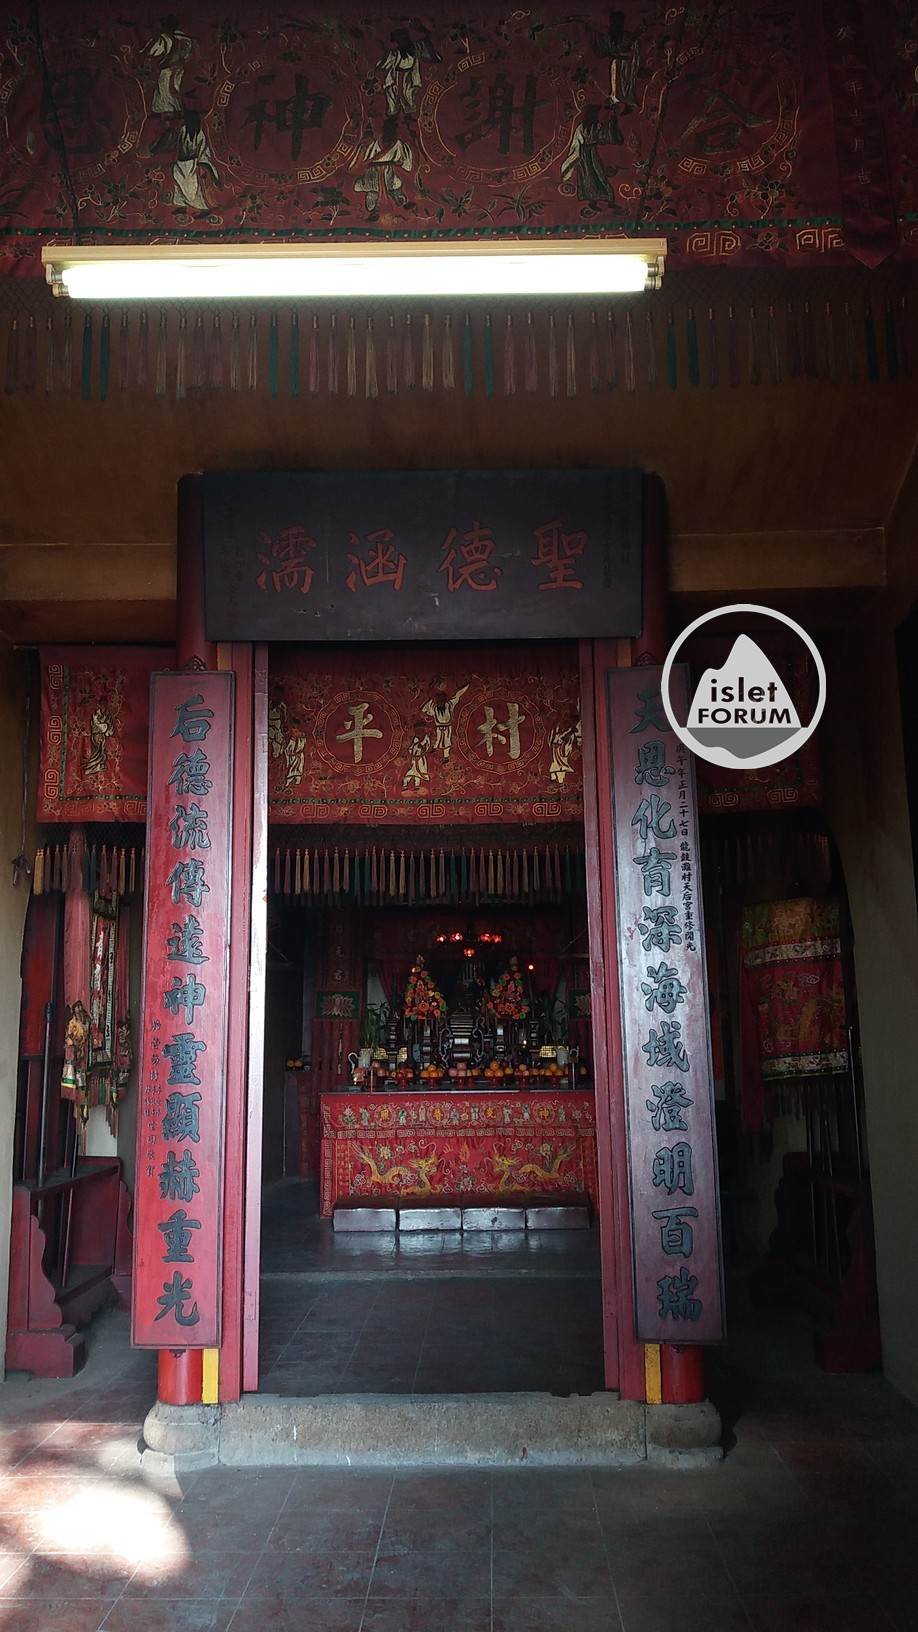 龍鼓灘天后廟lung kwu tan tin hau temple (18).jpg